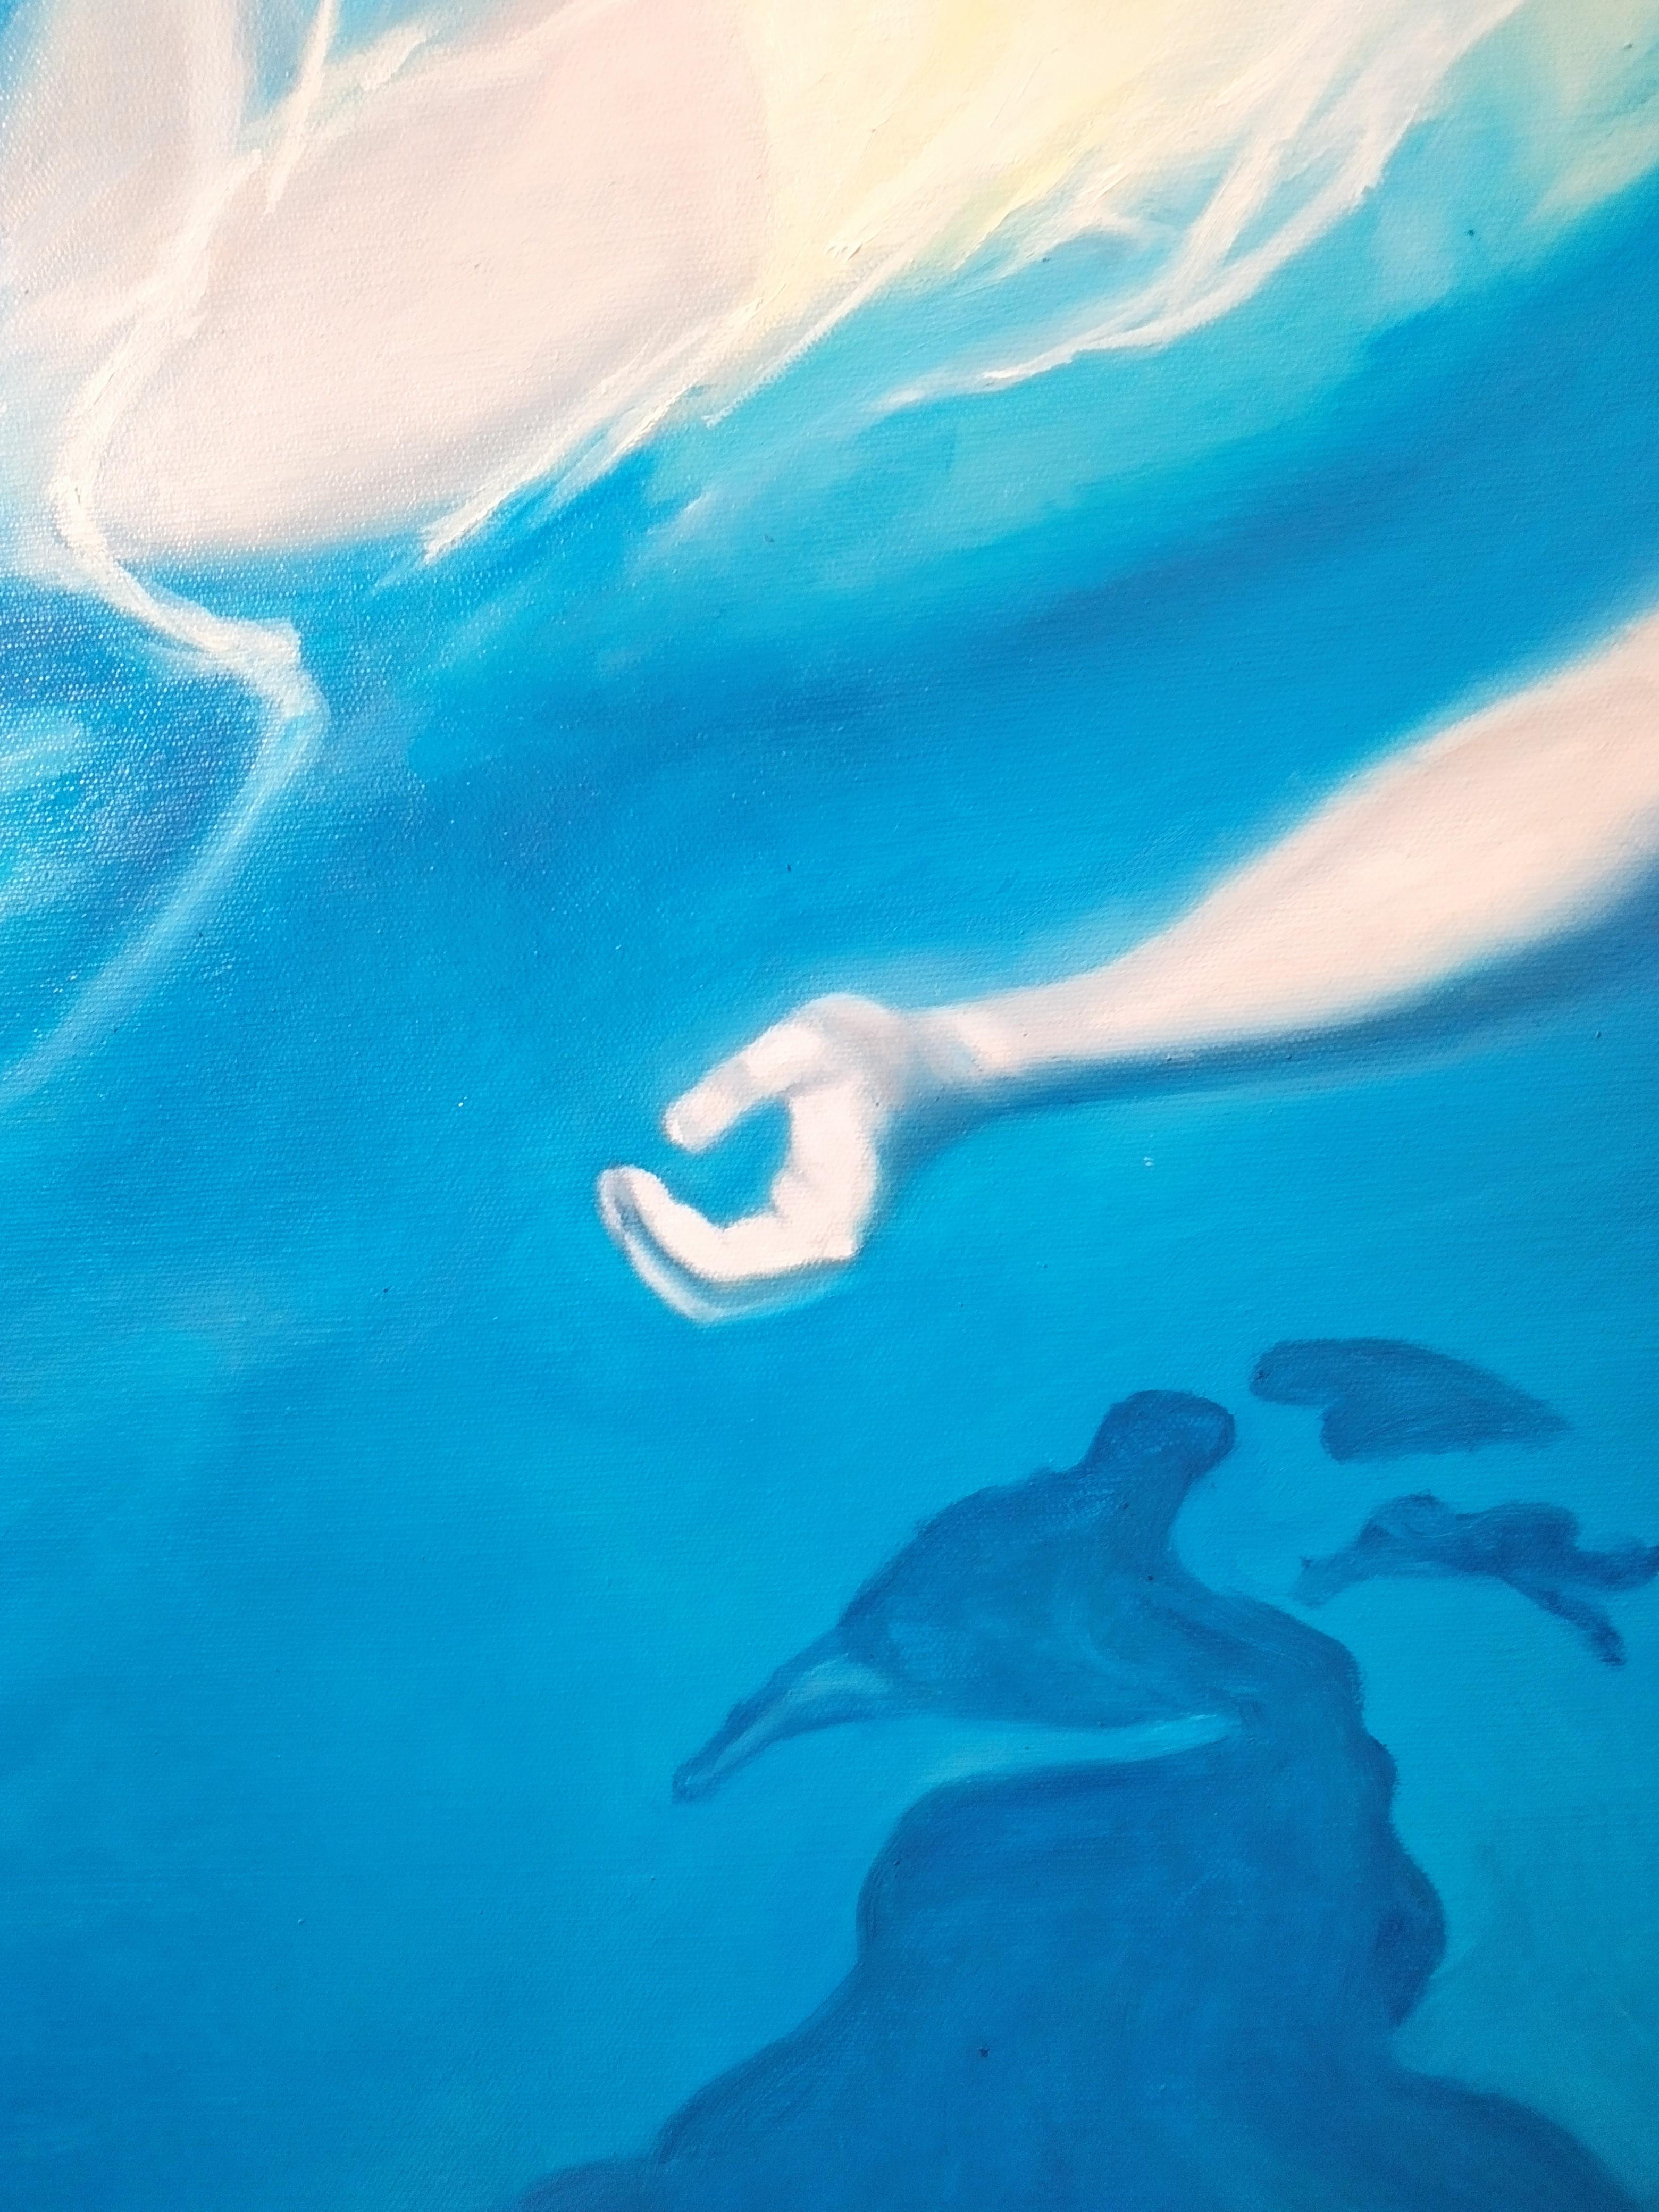 C'était comme voler dans les nuages et nager dans le ciel - Photorealist Painting by Katerina Hatzi